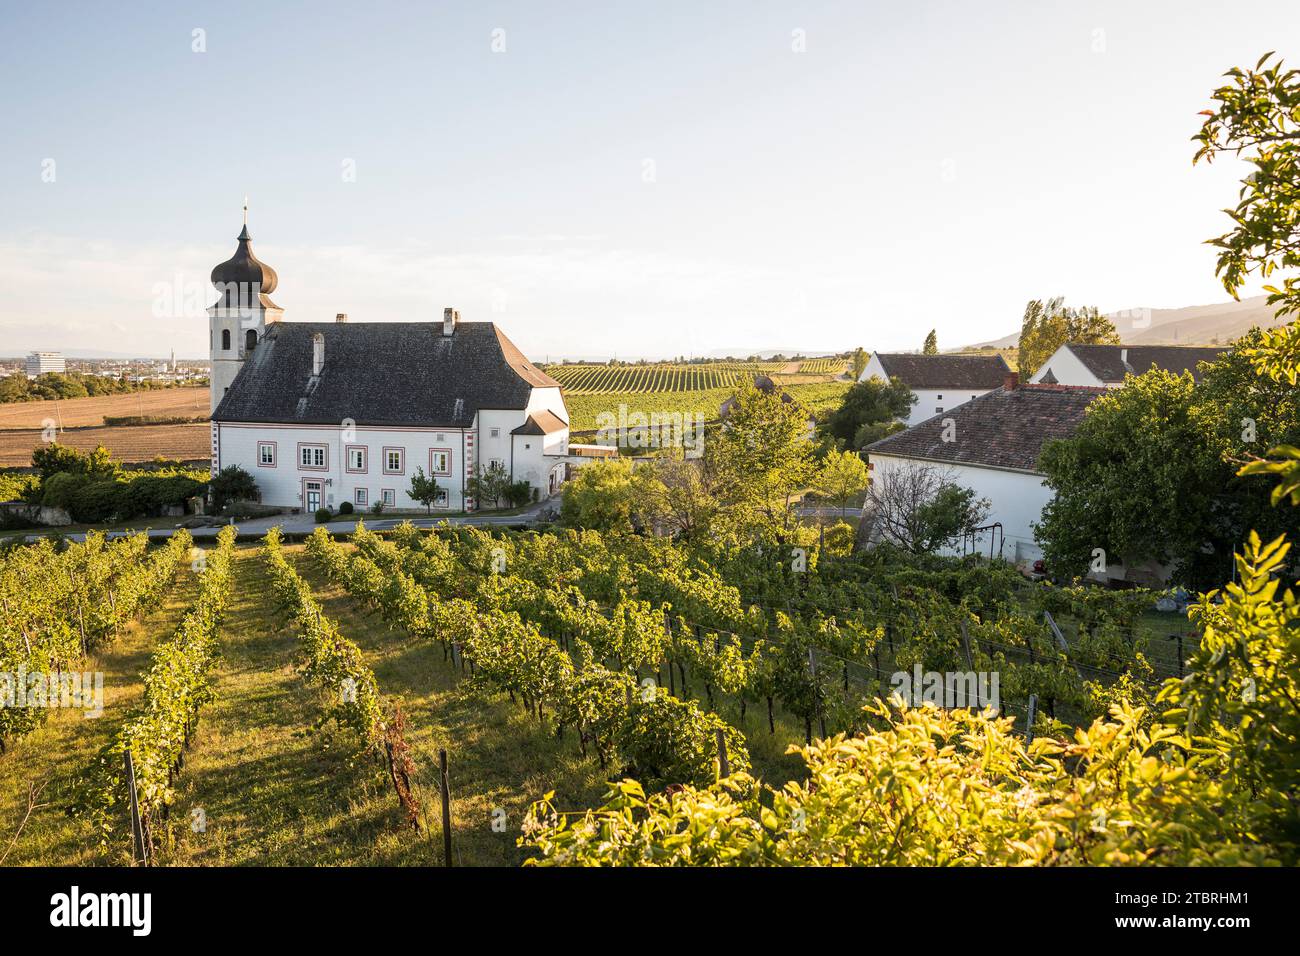 Freigut Thallern, also known as Stiftsweingut Heiligenkreuz, winery of Heiligenkreuz Abbey, Thallern, Gumpoldskirchen, Lower Austria, Austria, Europe Stock Photo